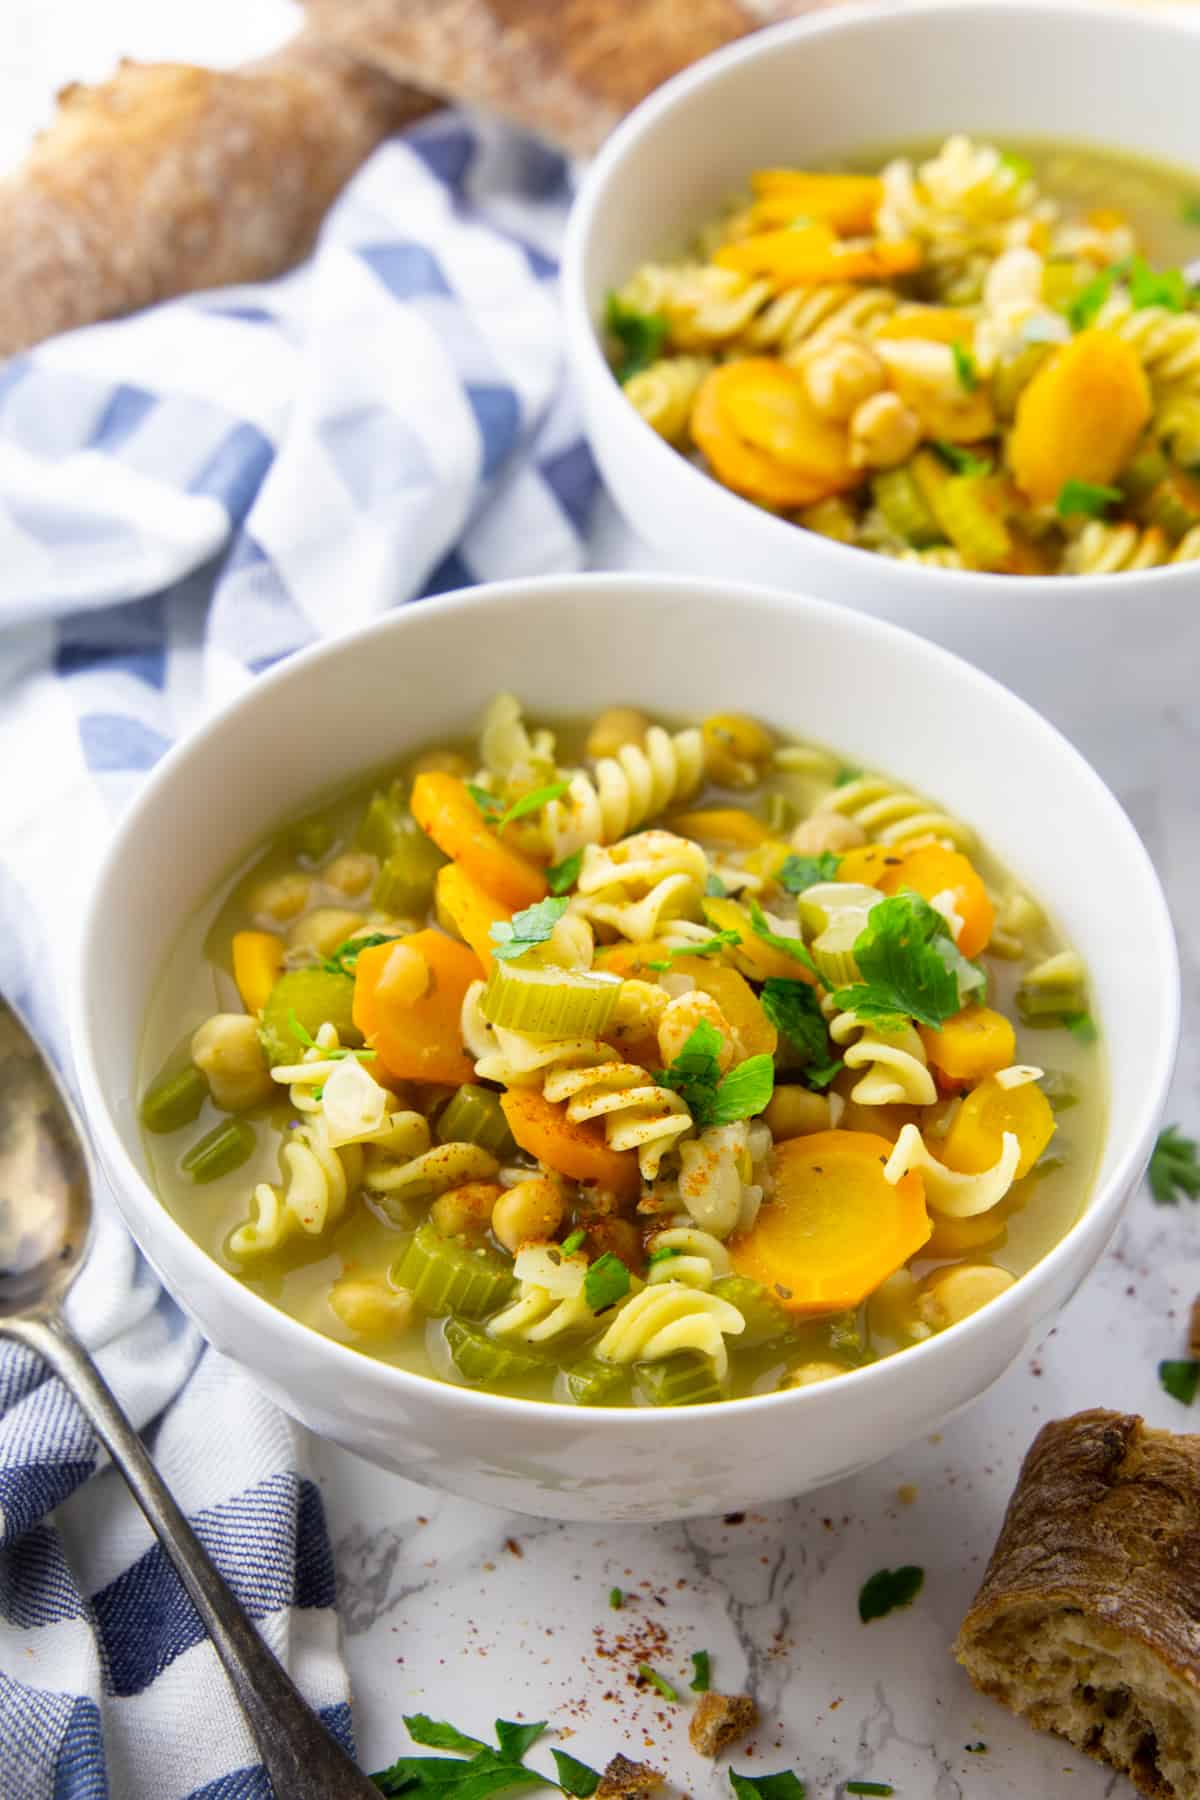 Vegan Chicken Noodle Soup - Eat Something Vegan